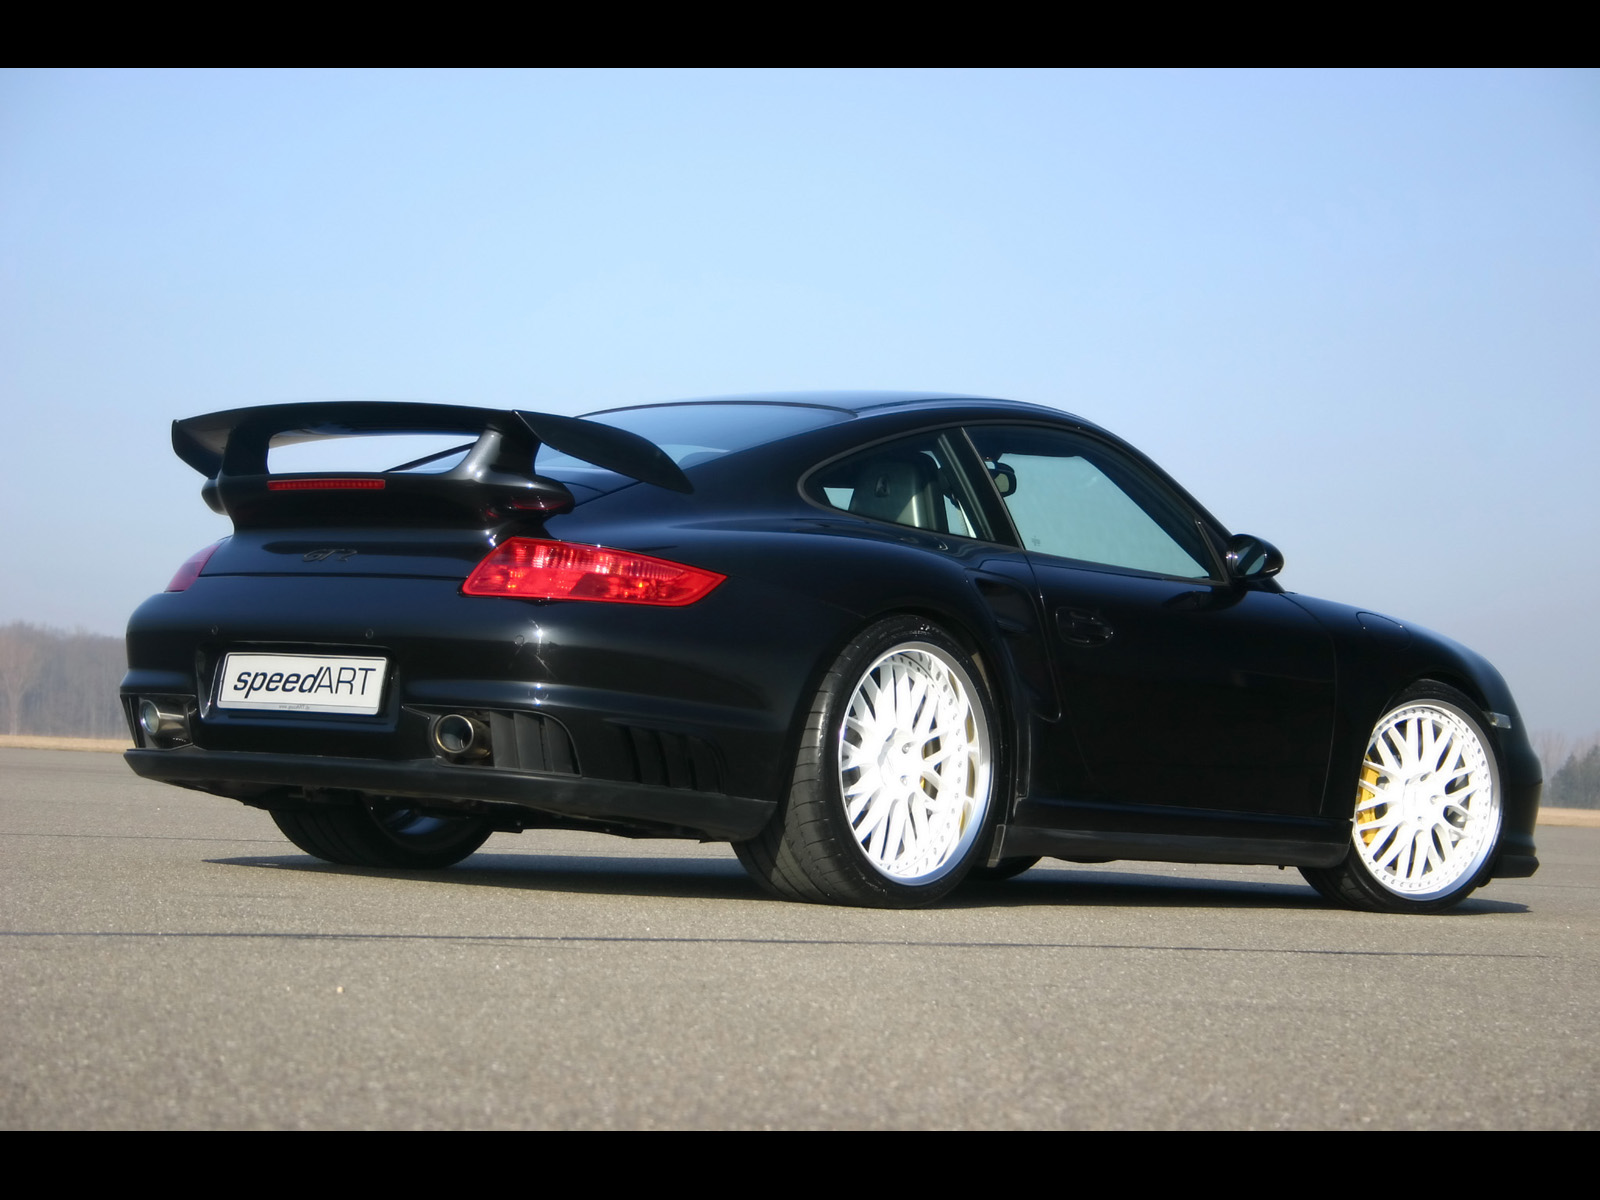 2008, Speedart, Btr xs, 650, Porsche, 997, Gt2, Tuning, Supercar Wallpaper